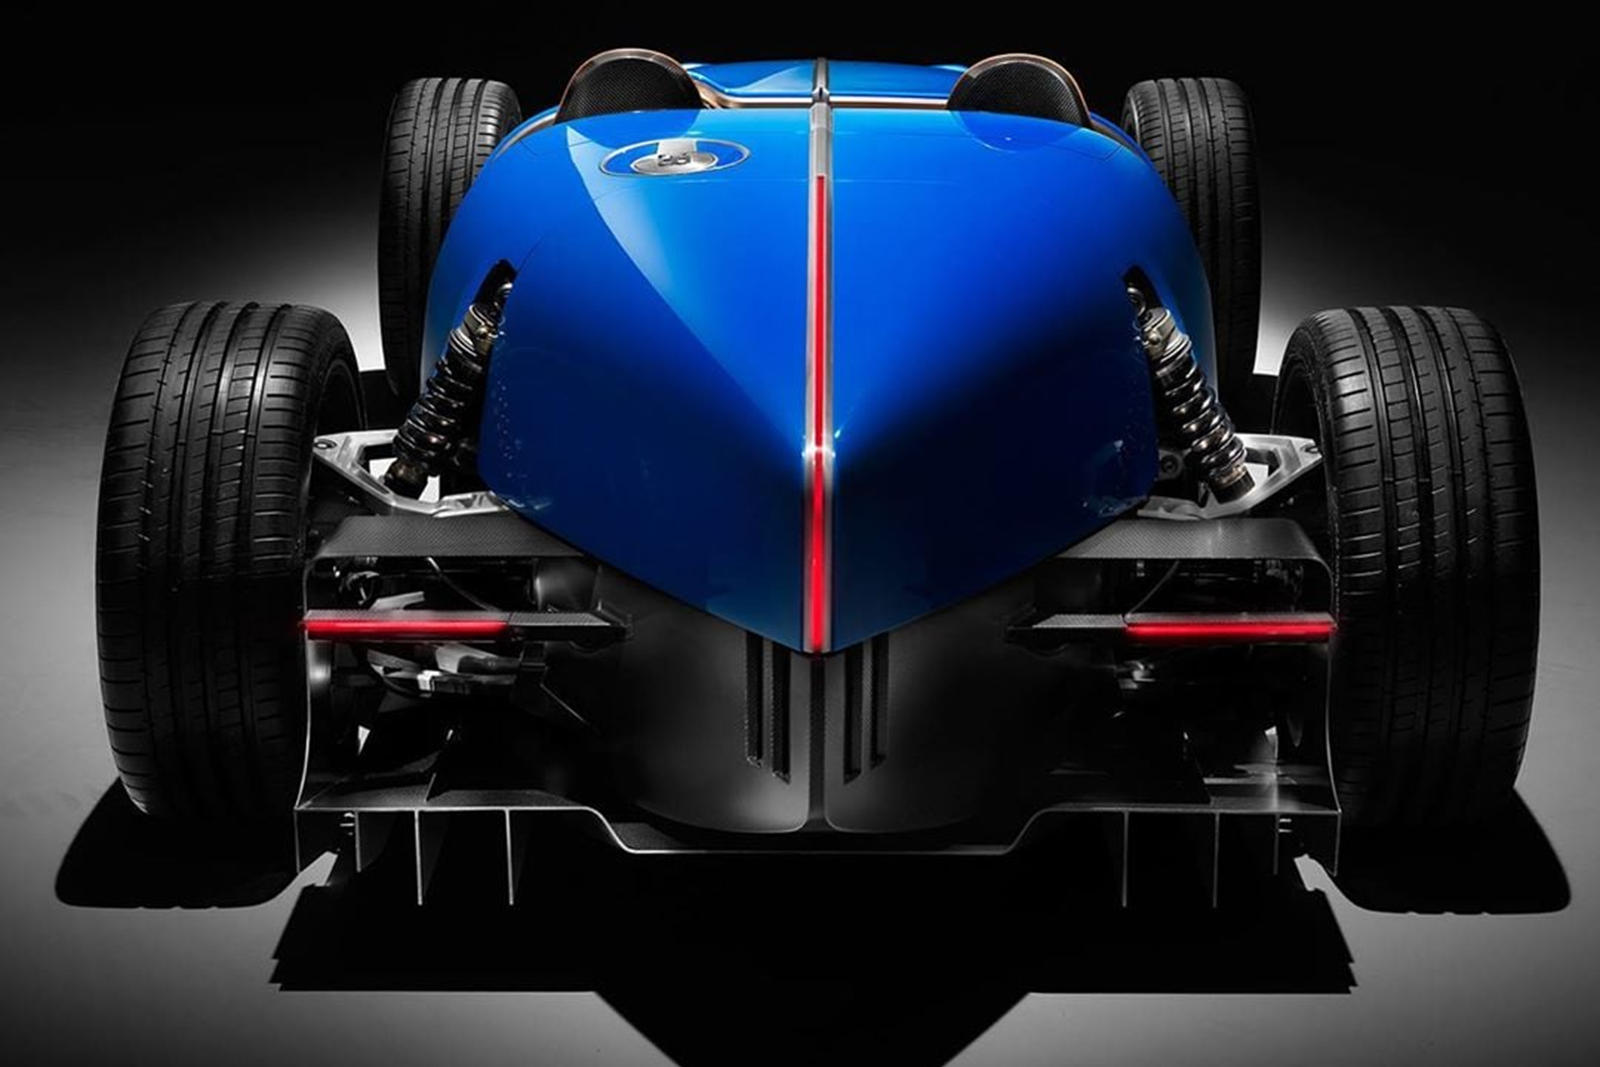 Bugatti в основном известен своими роскошными ракетами с богатой отделкой, такими как Chiron, которые могут развивать неприличную скорость по прямой, но французский автопроизводитель гордится гоночным наследием, восходящим к легендарному Bugatti Type